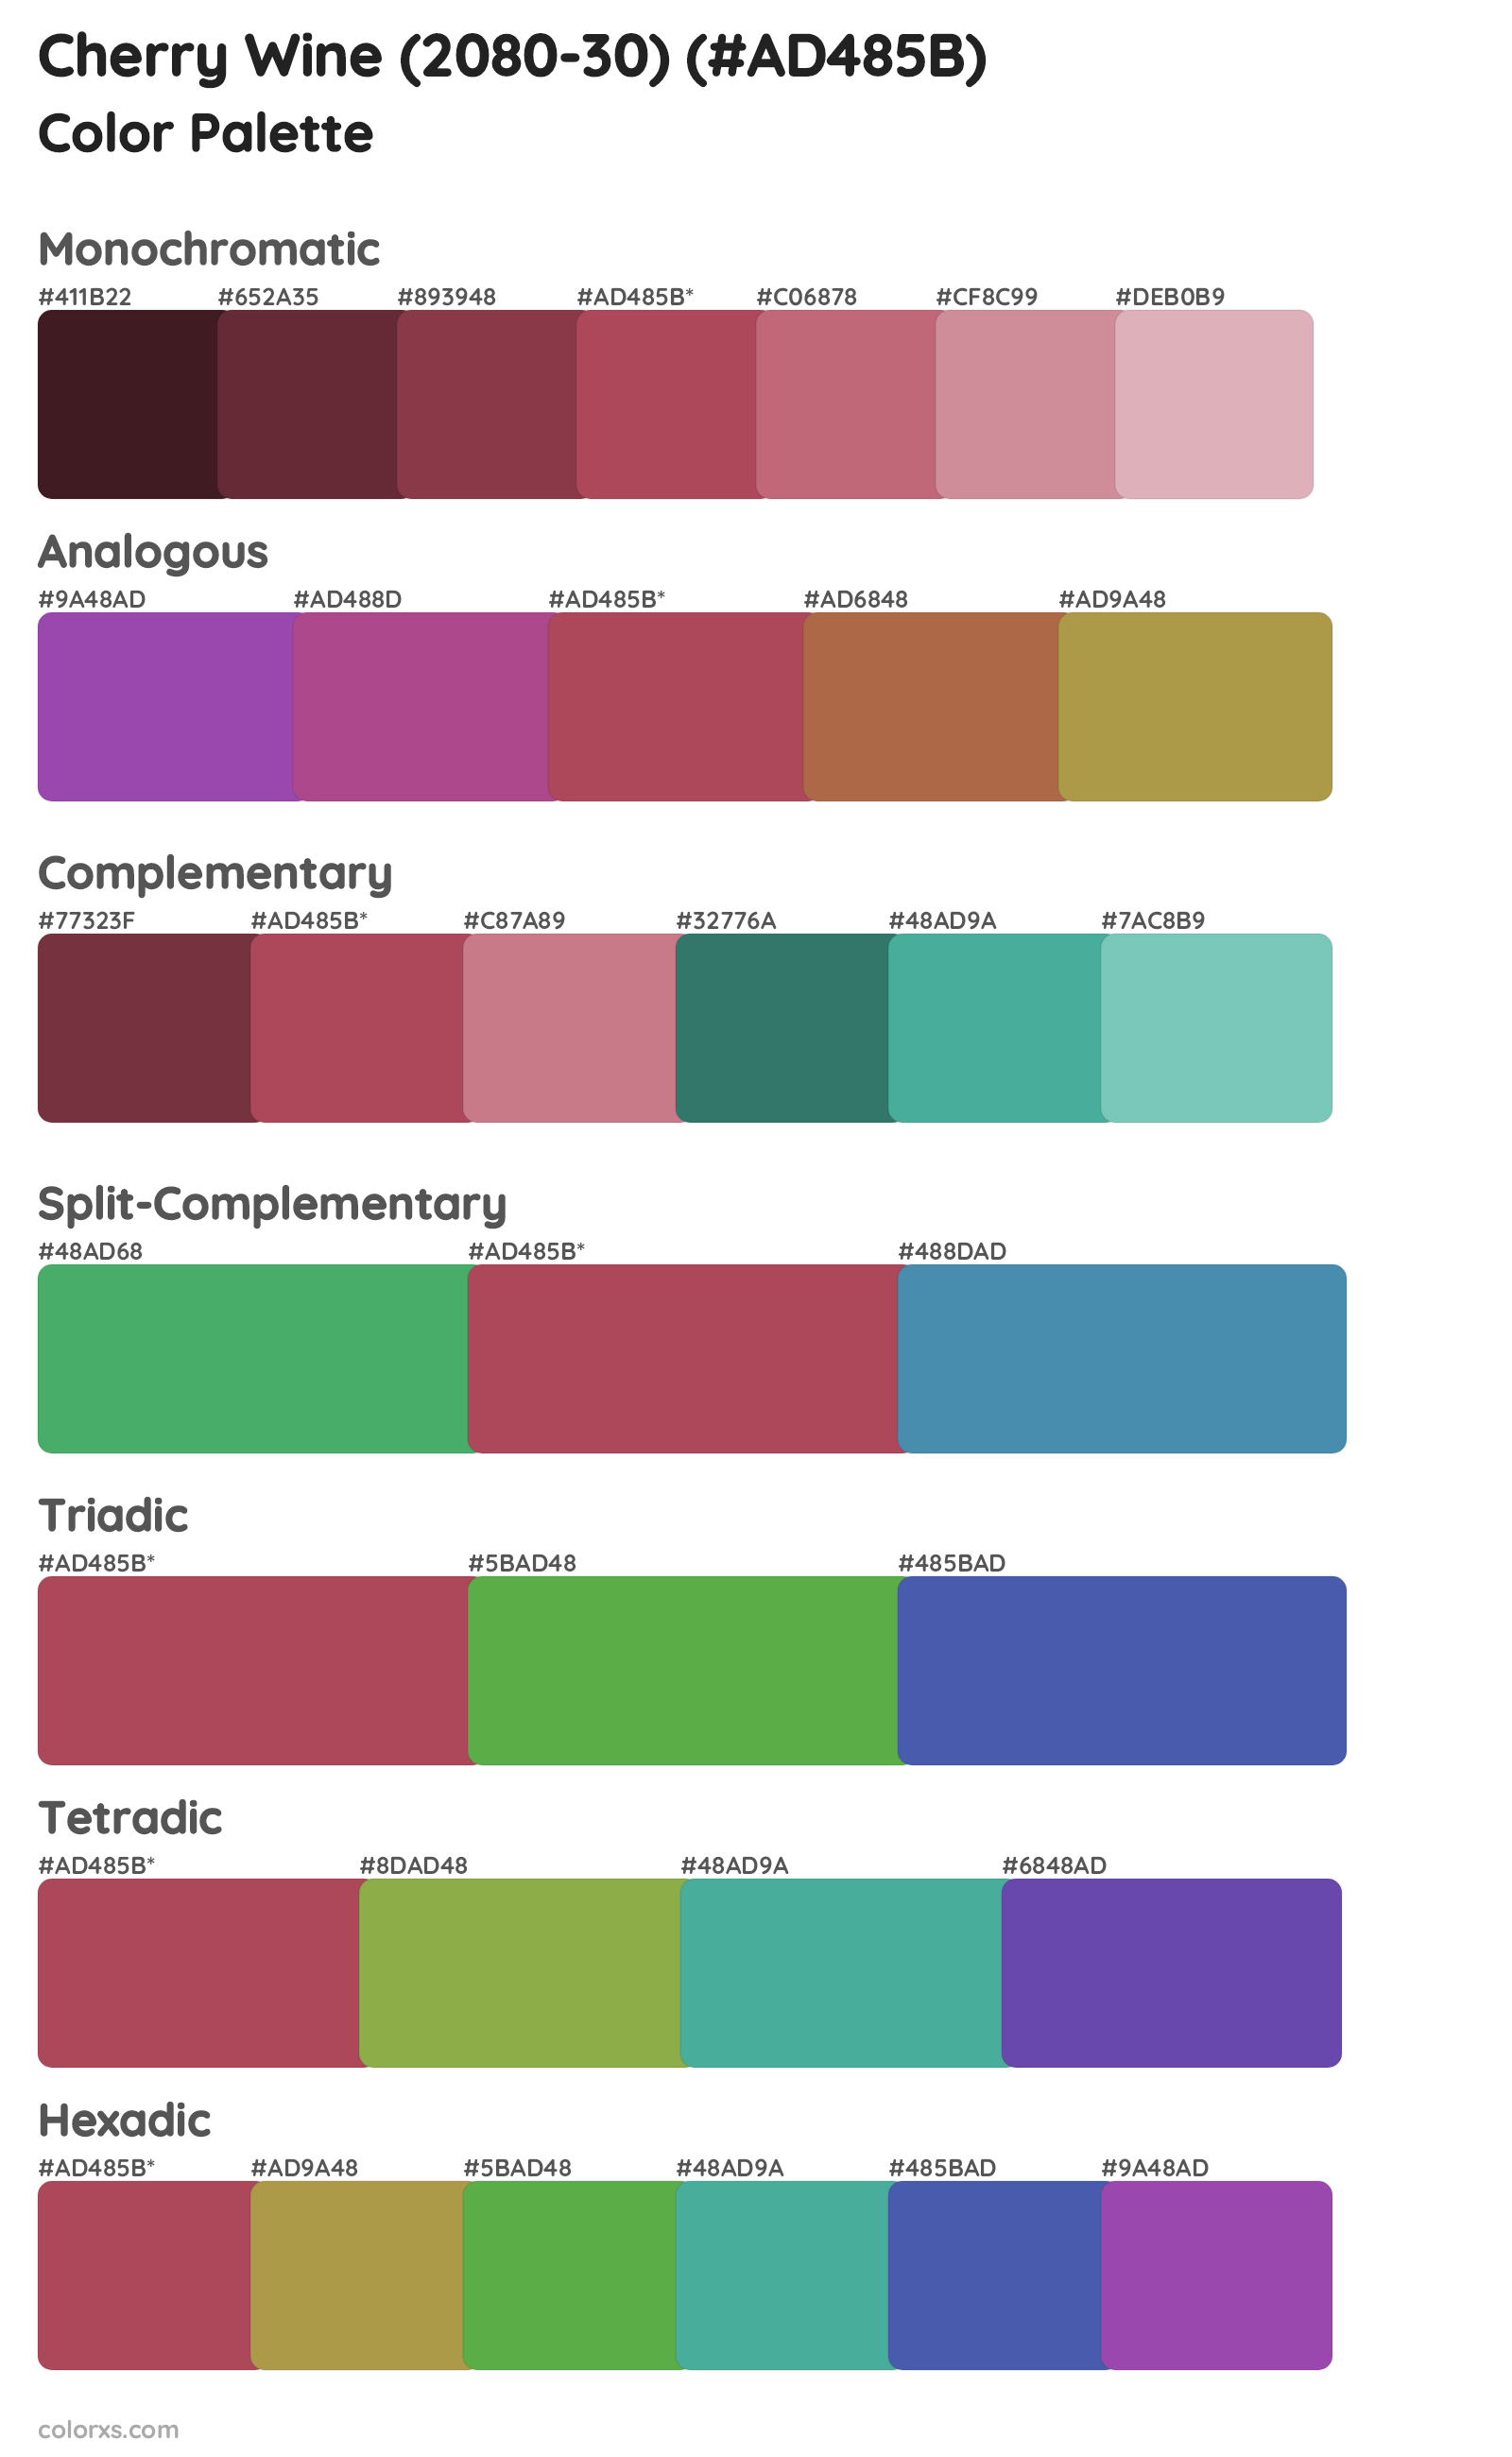 Cherry Wine (2080-30) Color Scheme Palettes